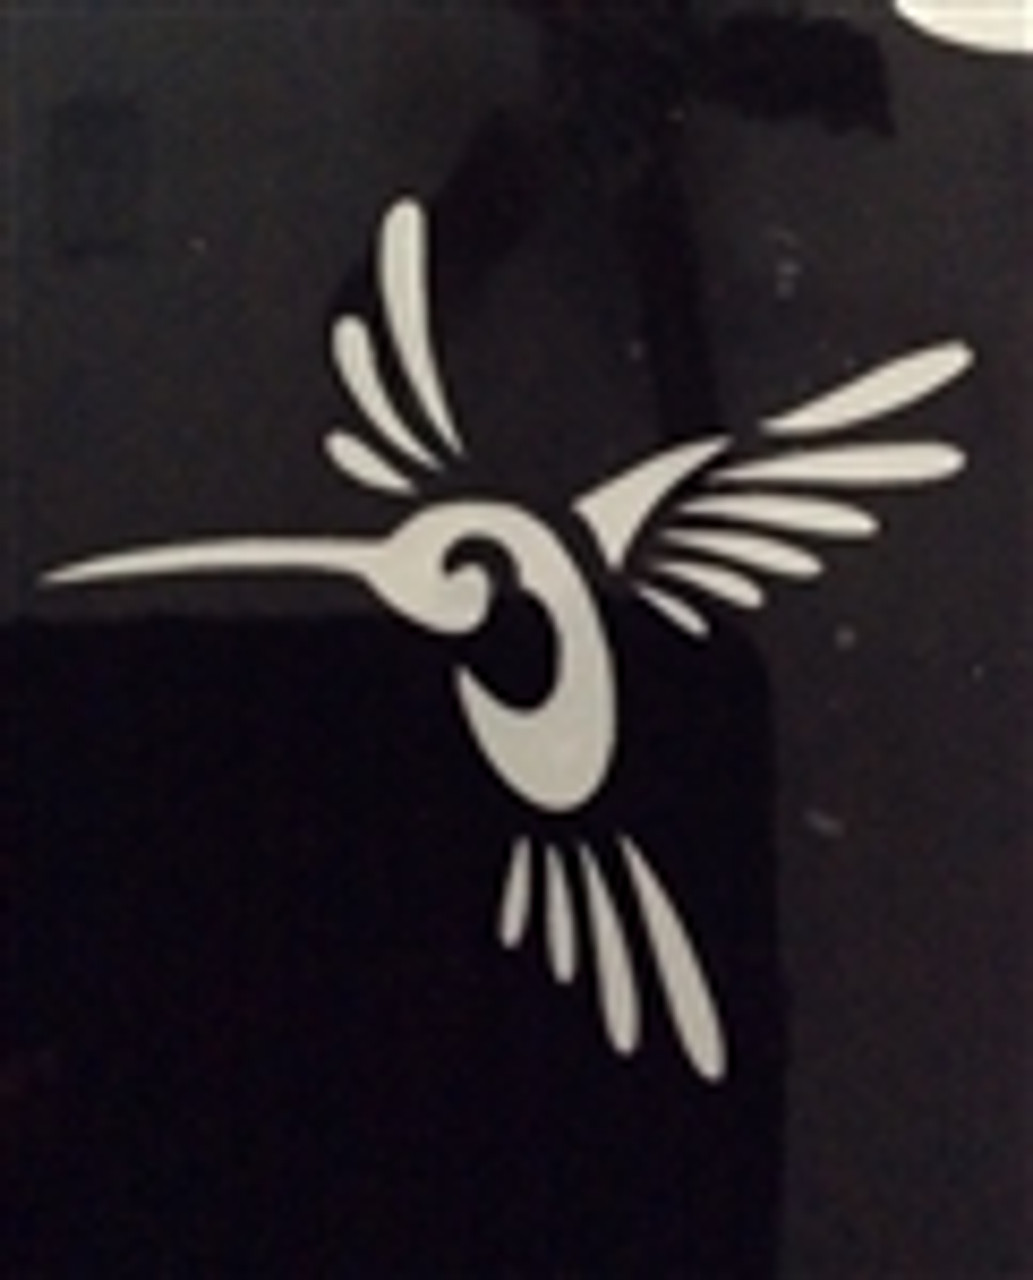 Hummingbird delicate - 3 Layer Stencil